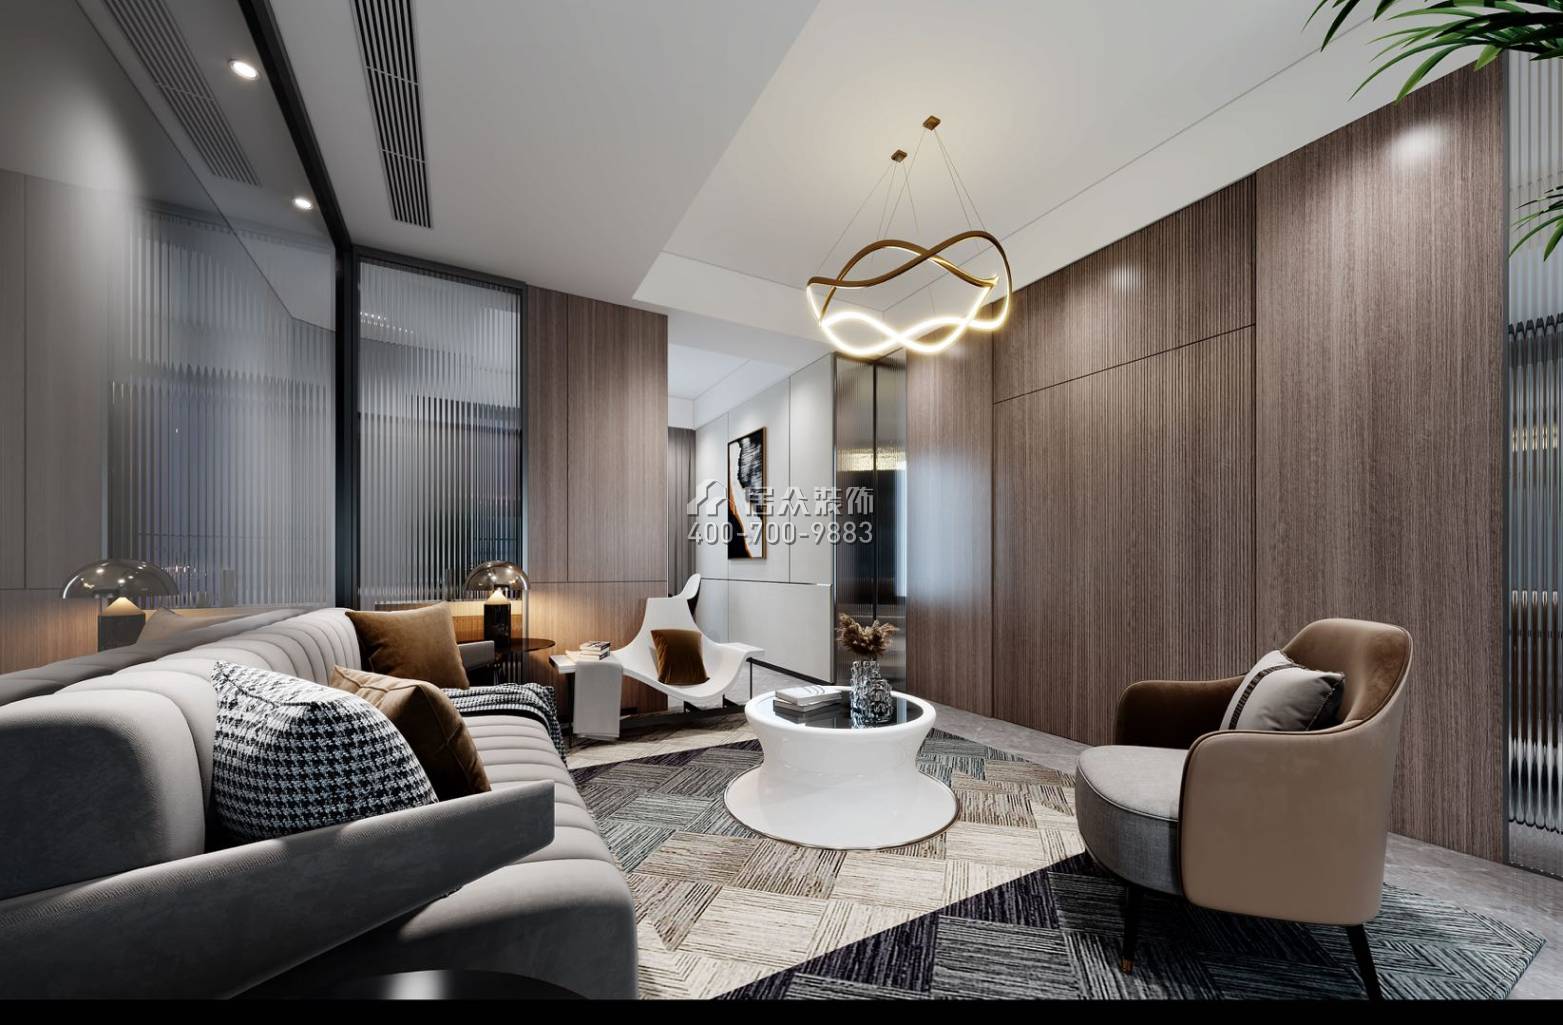 翠湖香山别苑238平方米现代简约风格复式户型客厅装修效果图